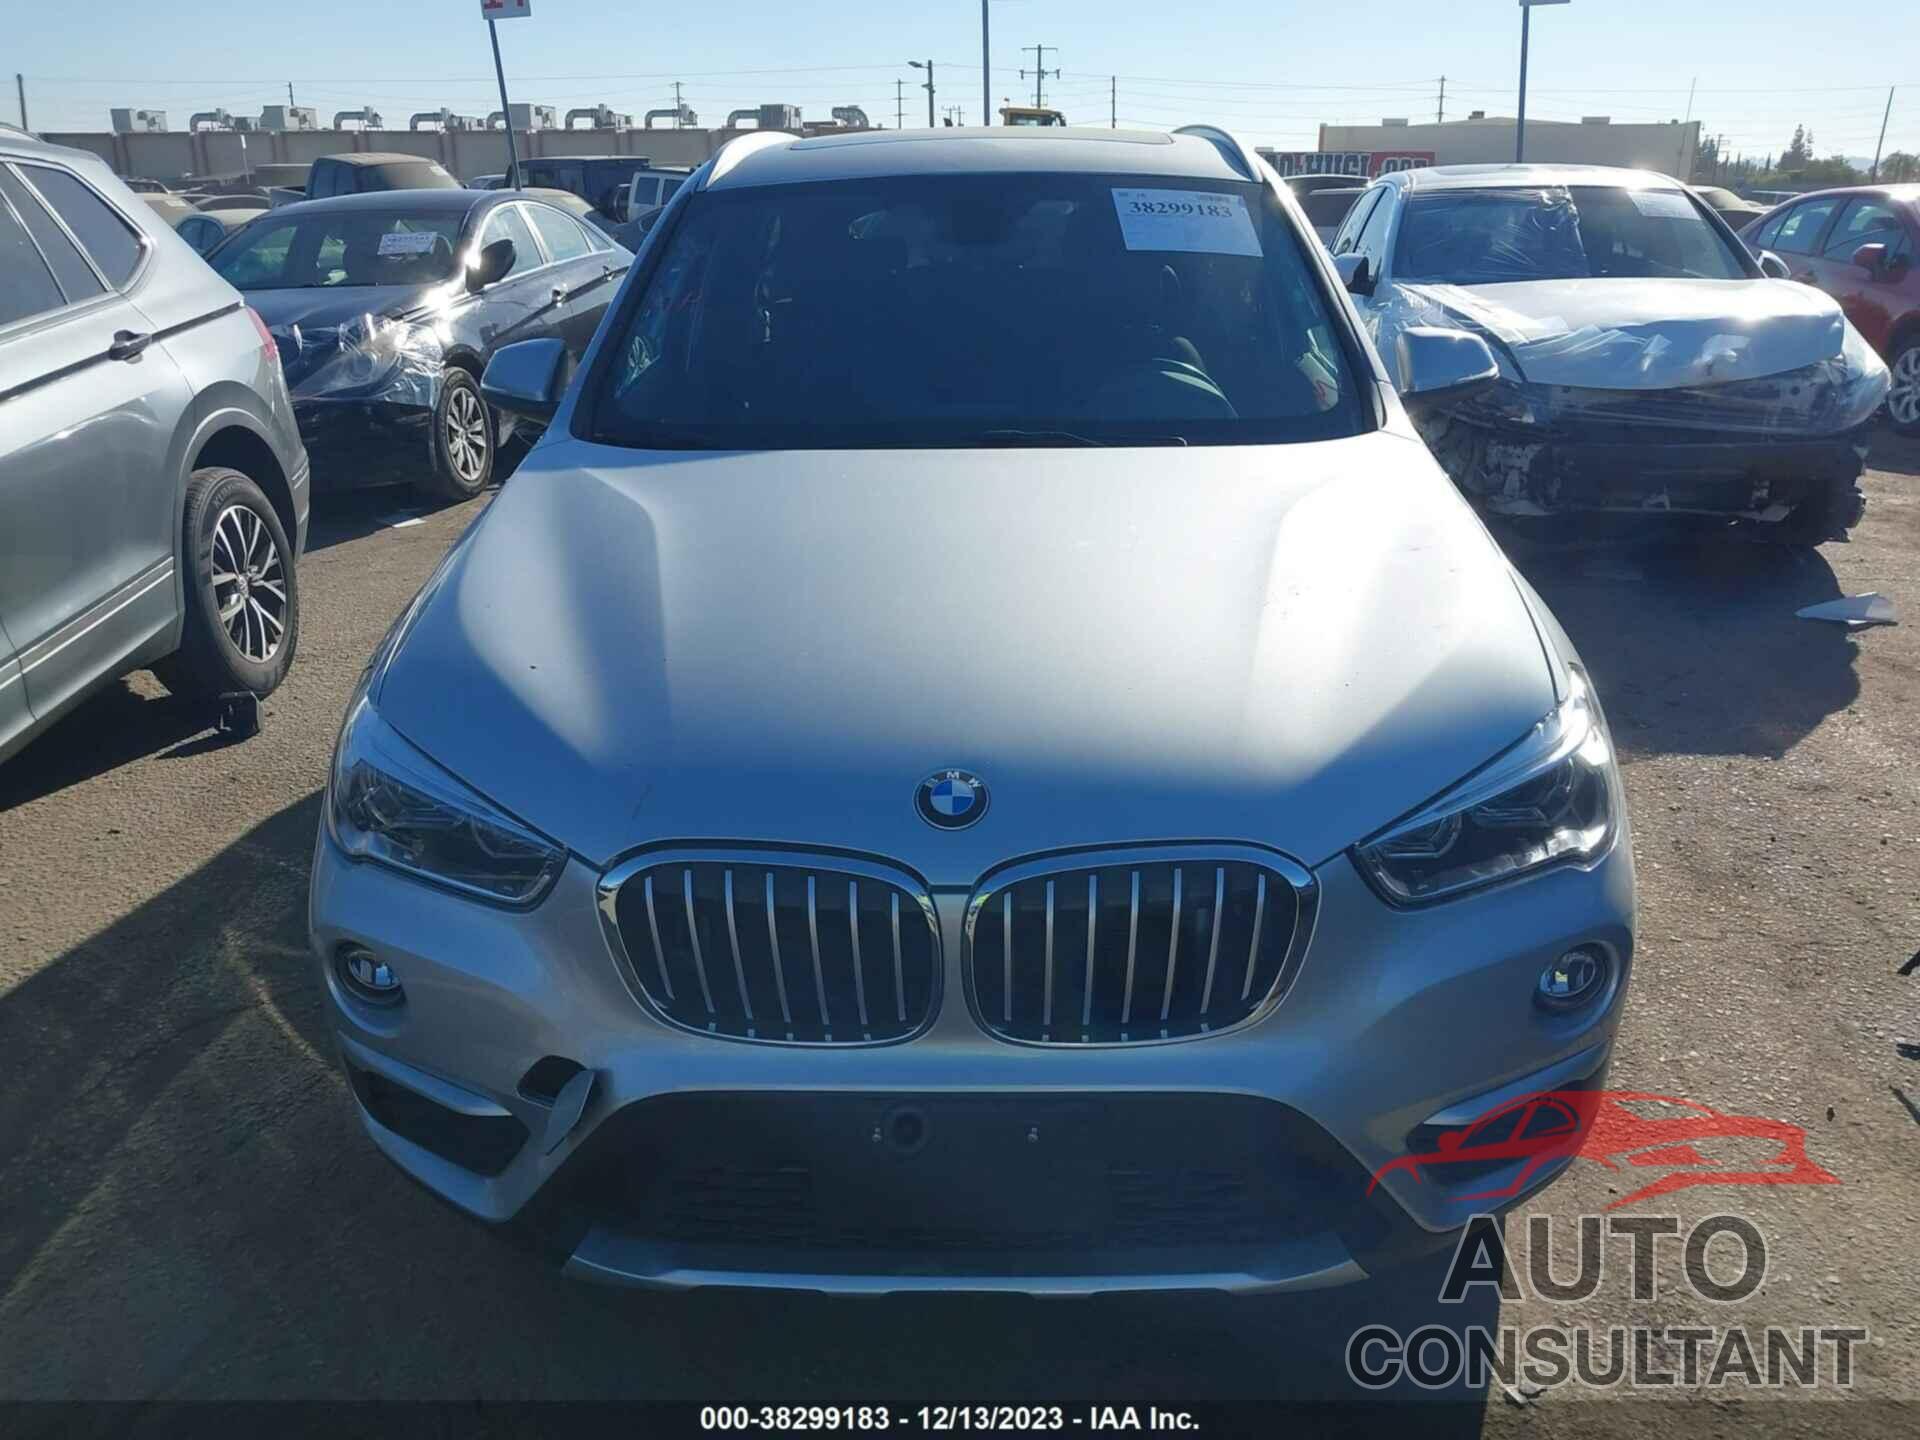 BMW X1 2018 - WBXHT3C35J5K28911